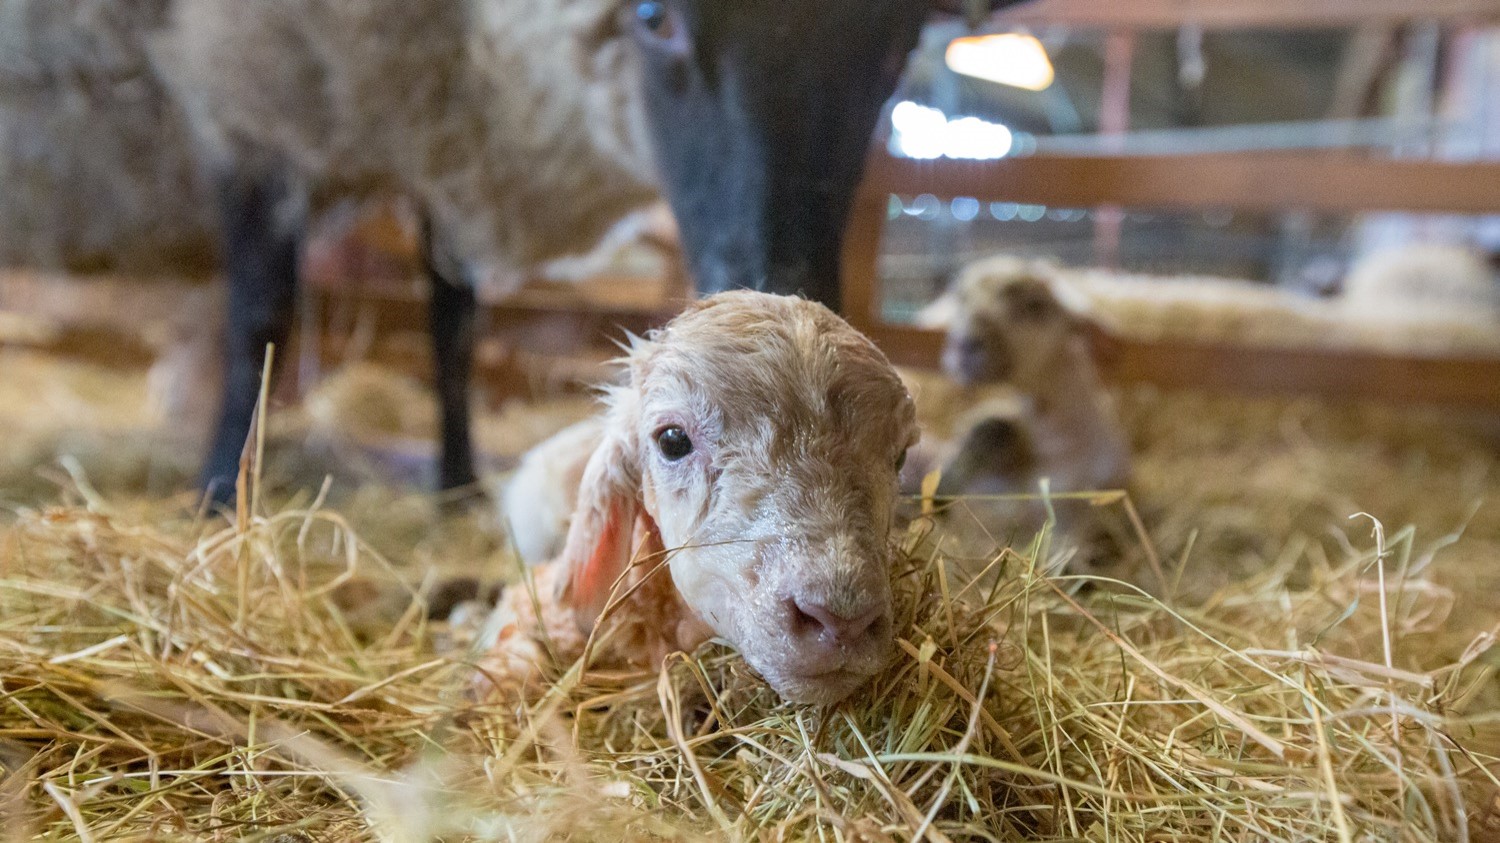 Newborn lamb in straw